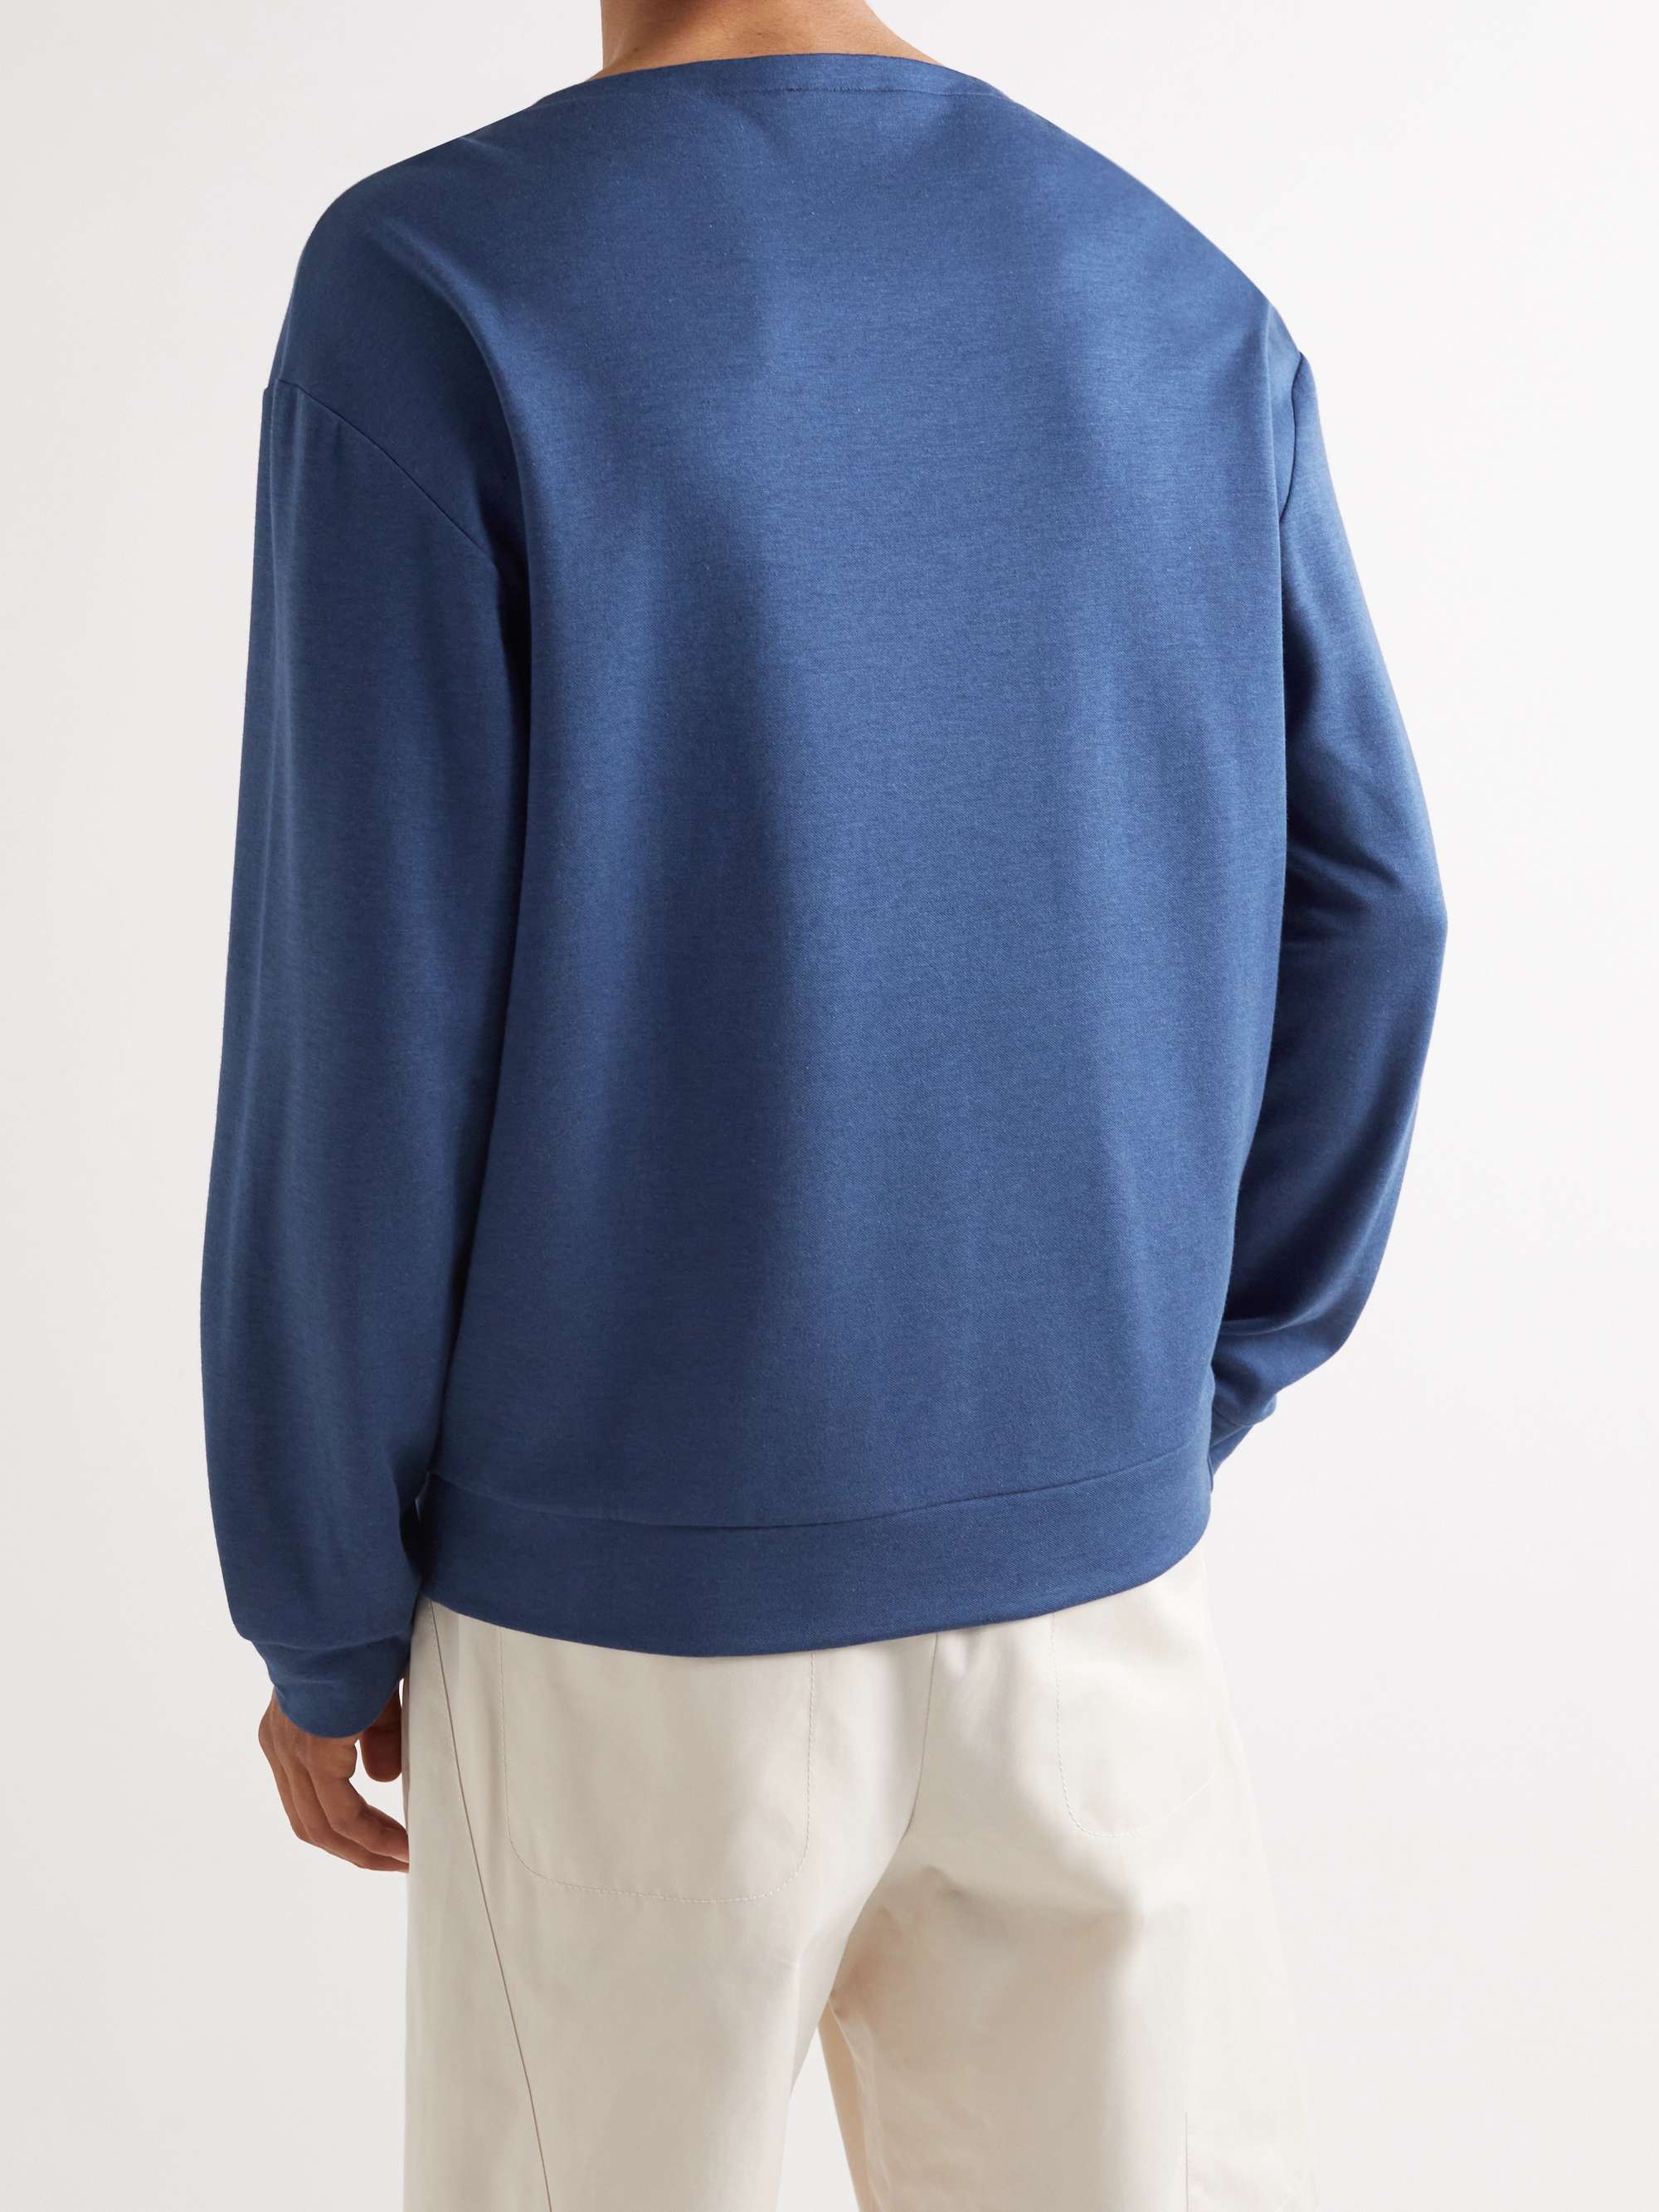 GIORGIO ARMANI Cotton-Blend Sweater